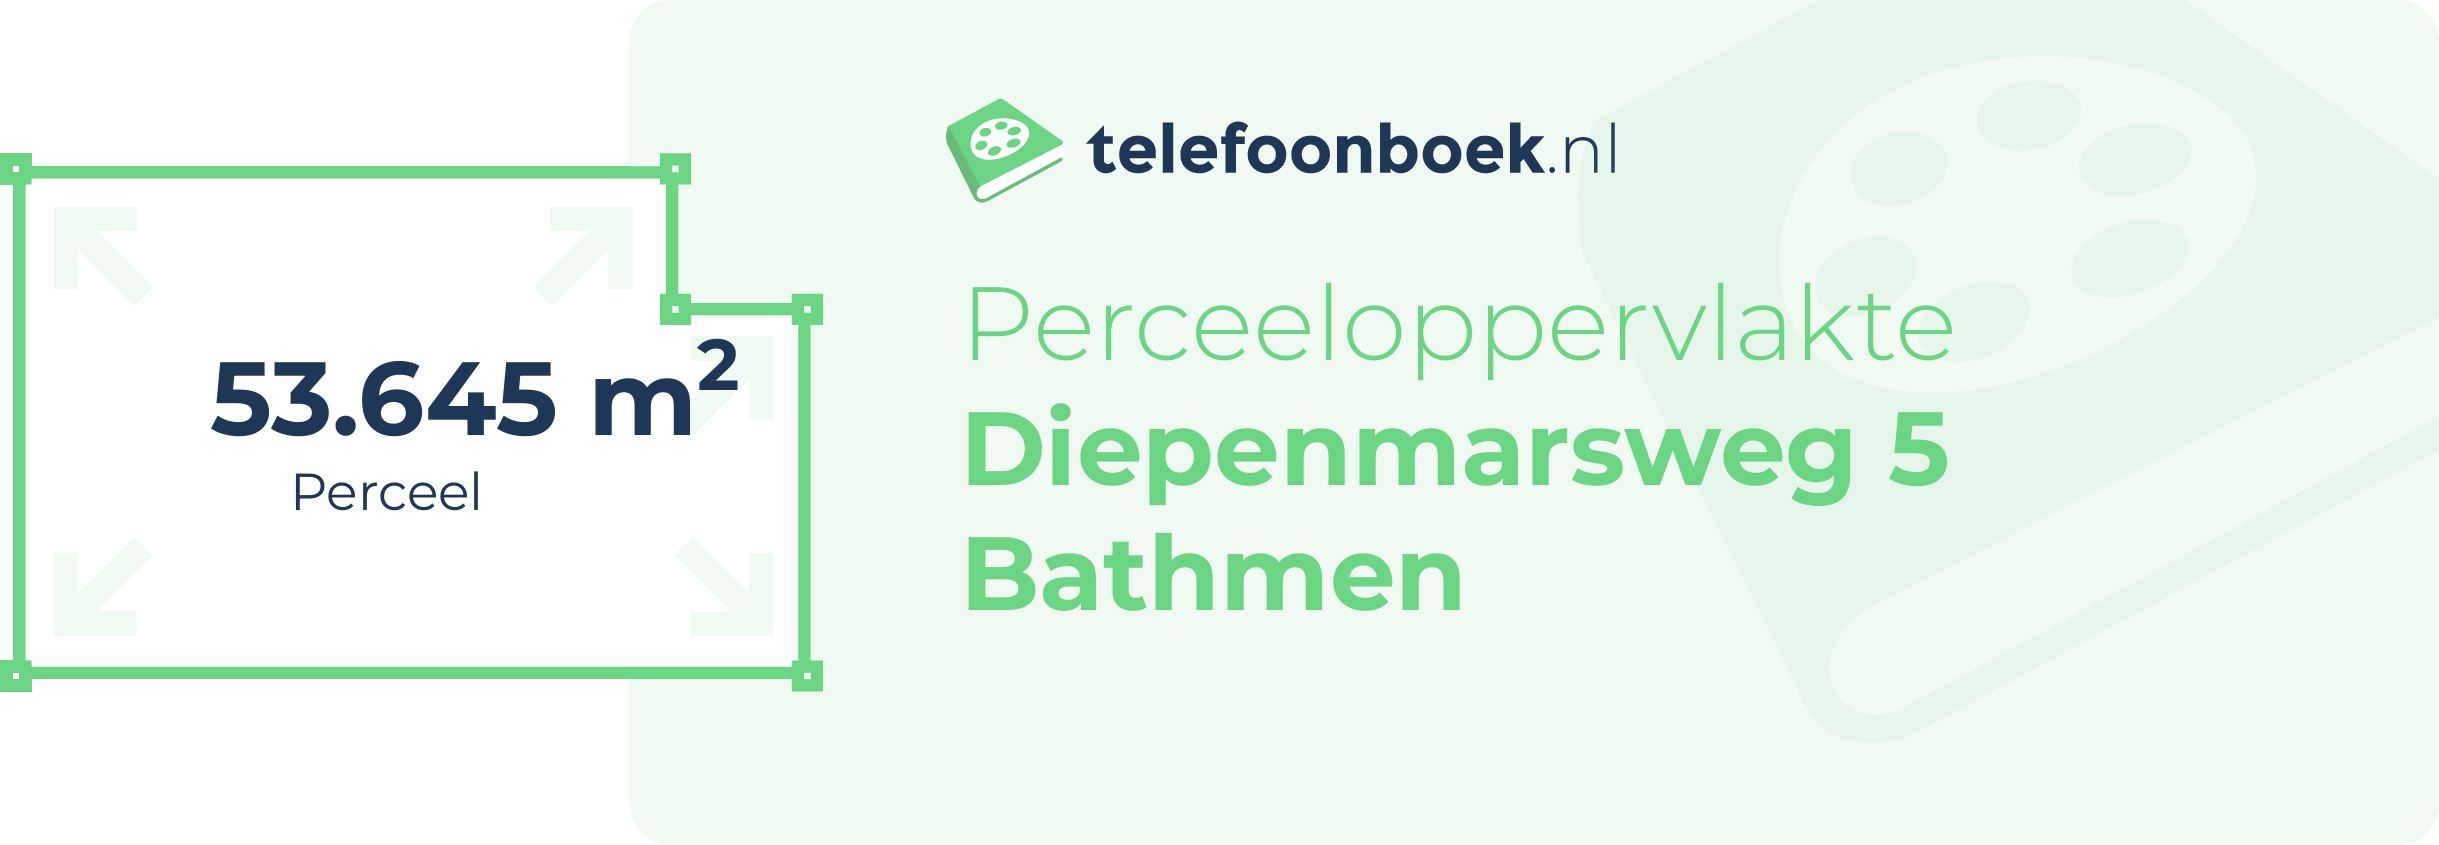 Perceeloppervlakte Diepenmarsweg 5 Bathmen